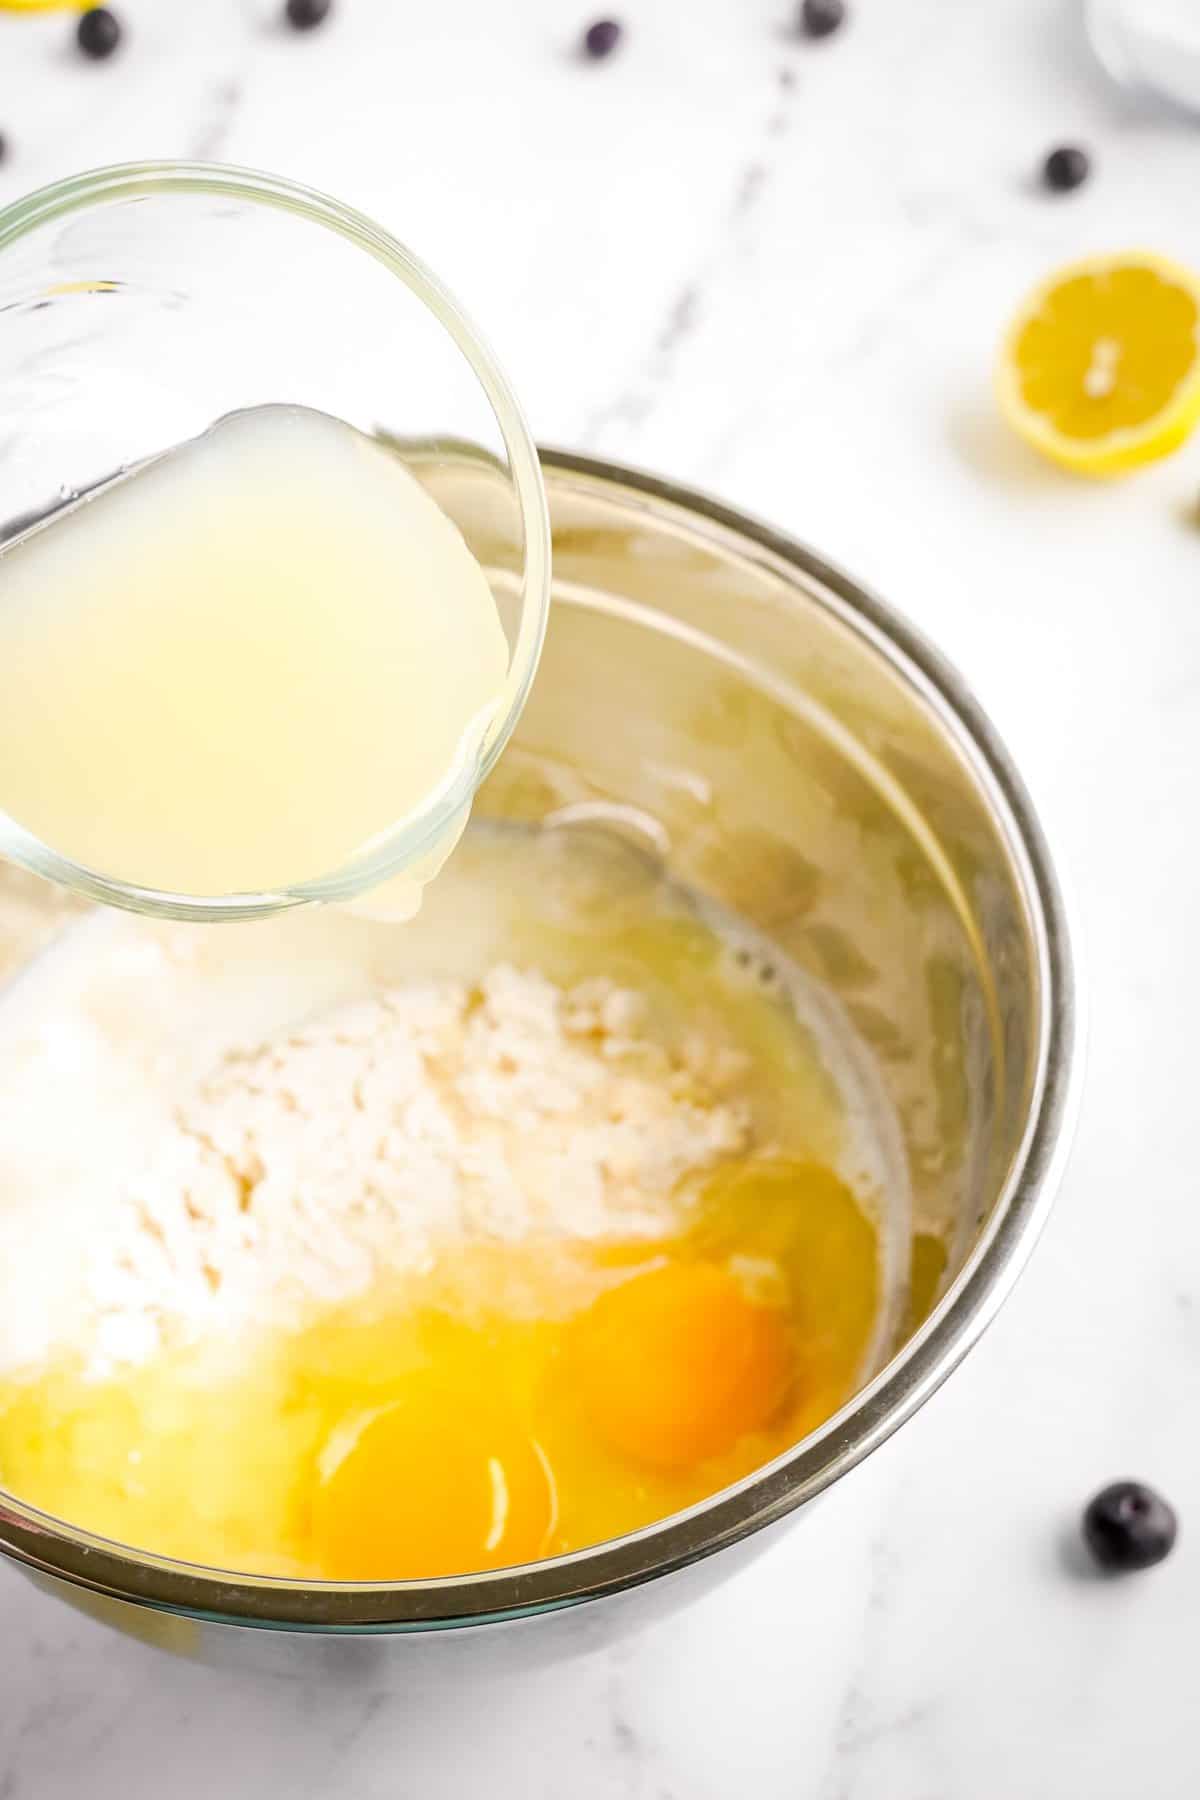 Adding lemon juice to quick bread ingredients